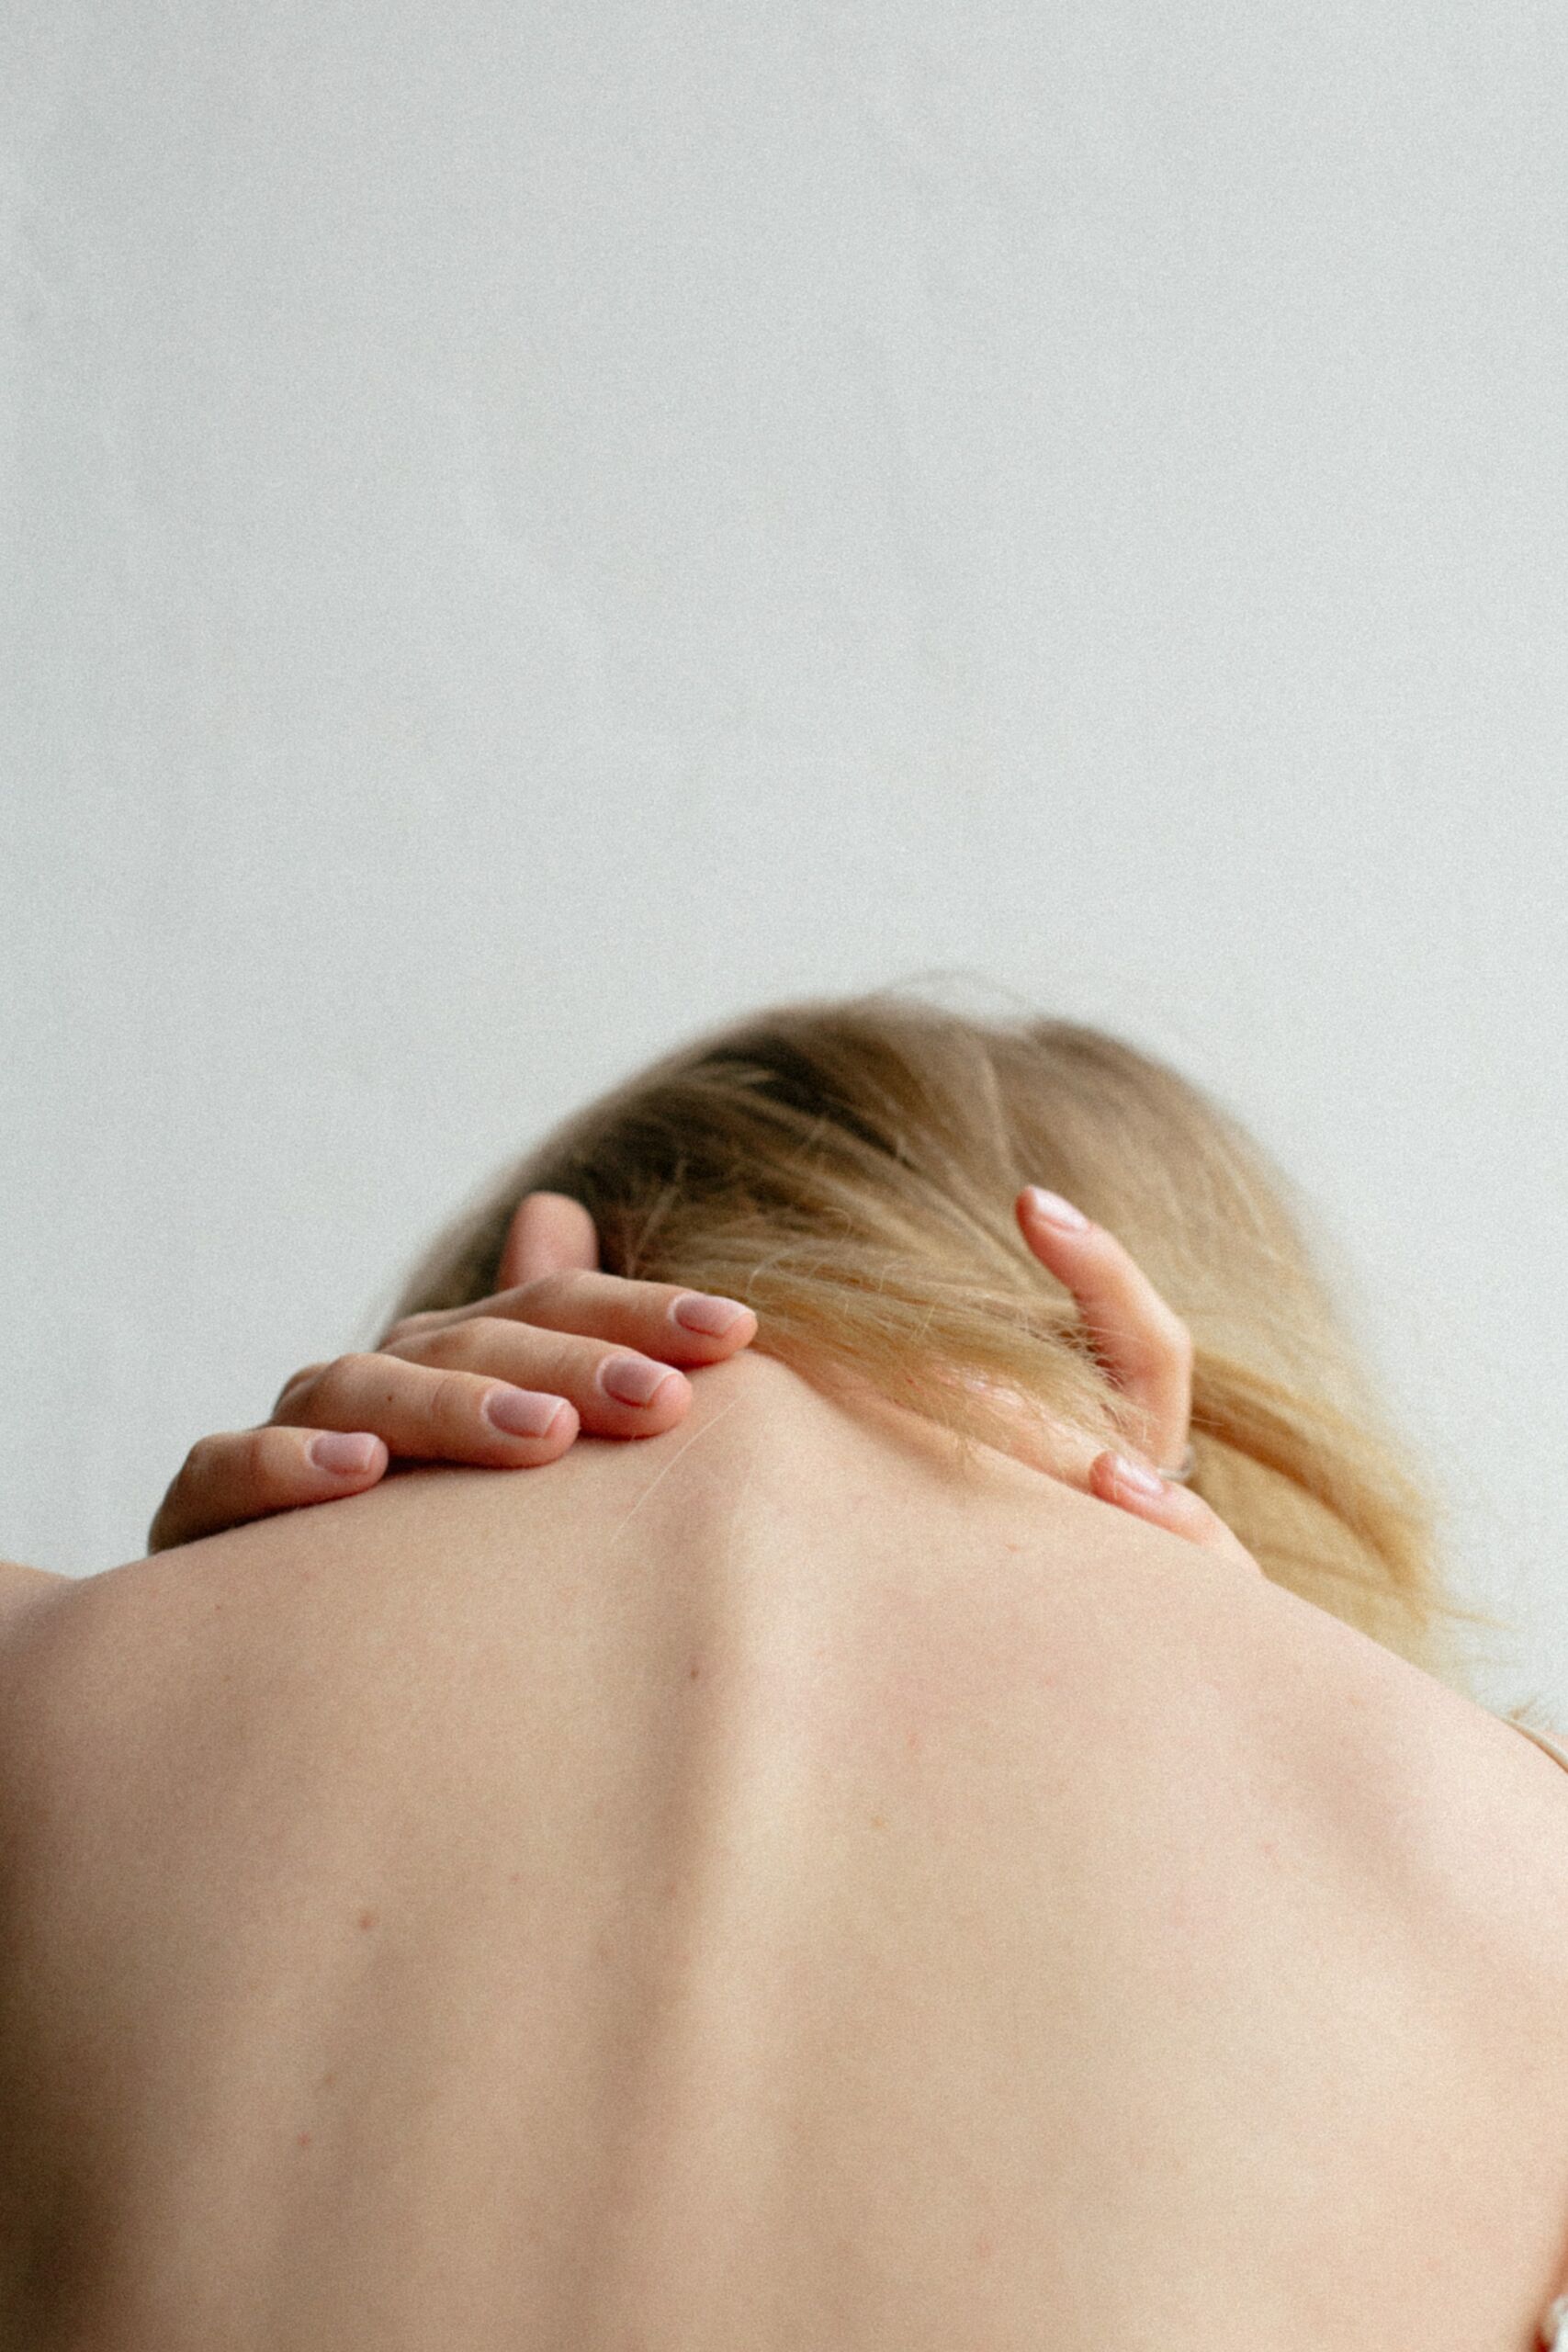 chronische Schmerzen behandeln - ein Schmerzgedächtnis bildet sich häufig bei längerfristigen Schmerzen - Frau mit Nackenschmerz, die ihre Nackenmuskeln berührt